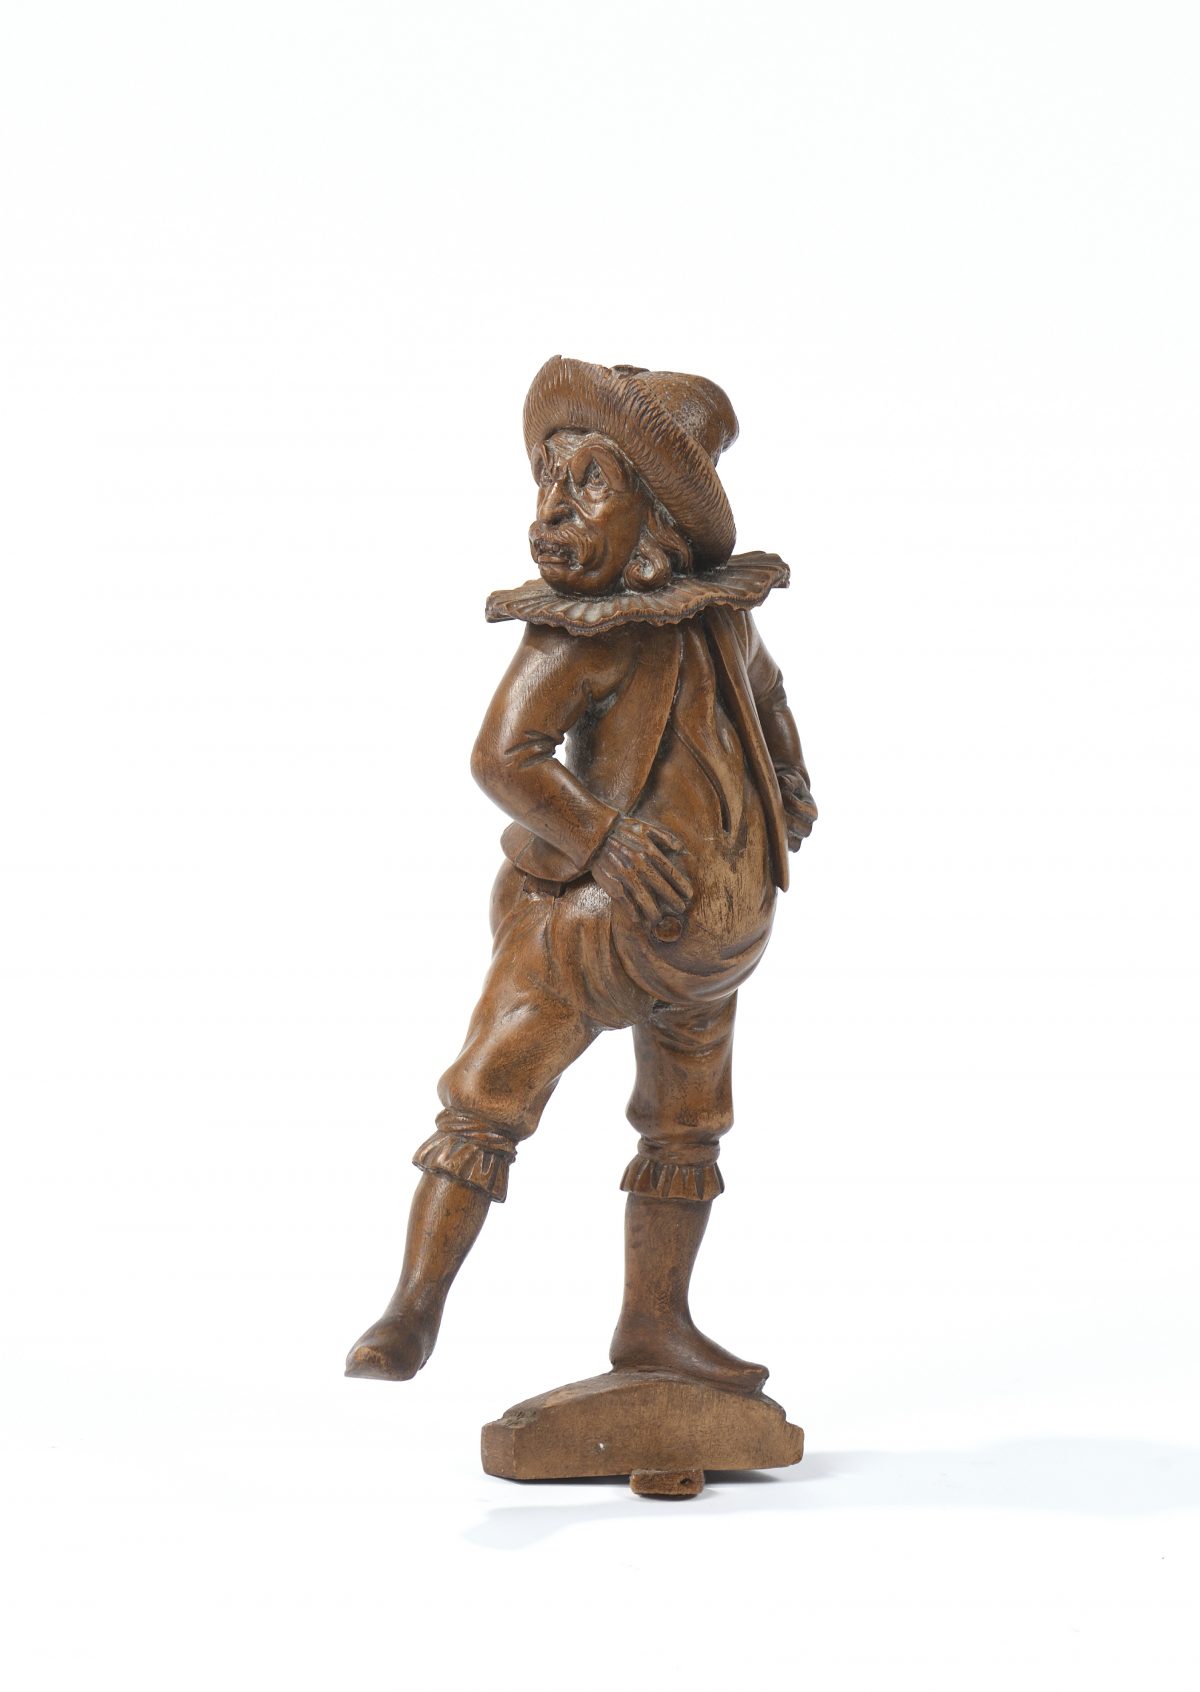 Casse-noisettes en bois naturel sculpté figurant un personnage bedonnant vêtu d'une fraise et d'un chapeau à plumes.